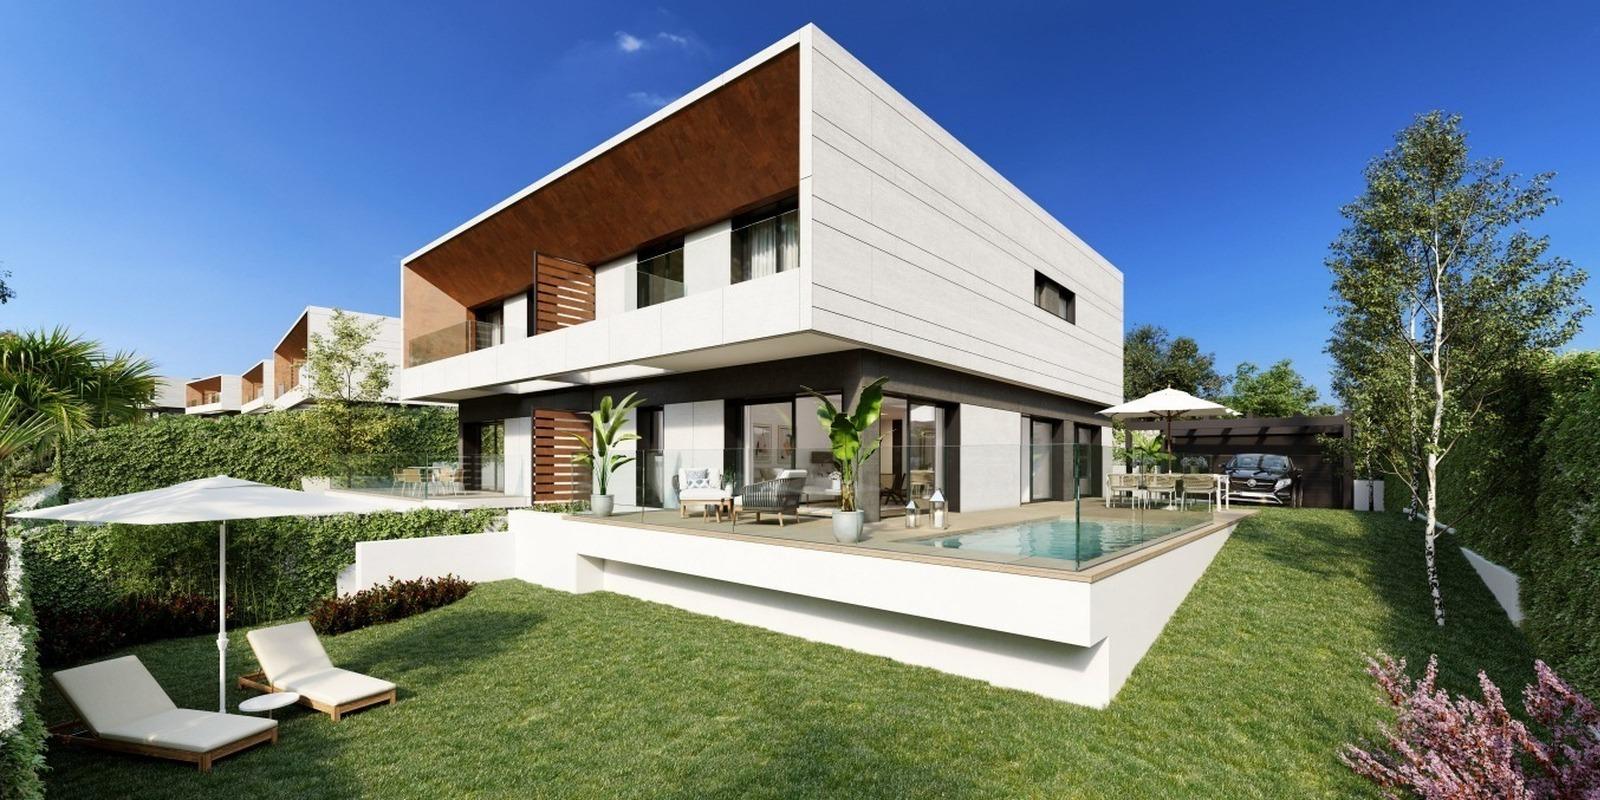 AEDAS Homes lanza una nueva promoción de 14 viviendas unifamiliares con piscina privada